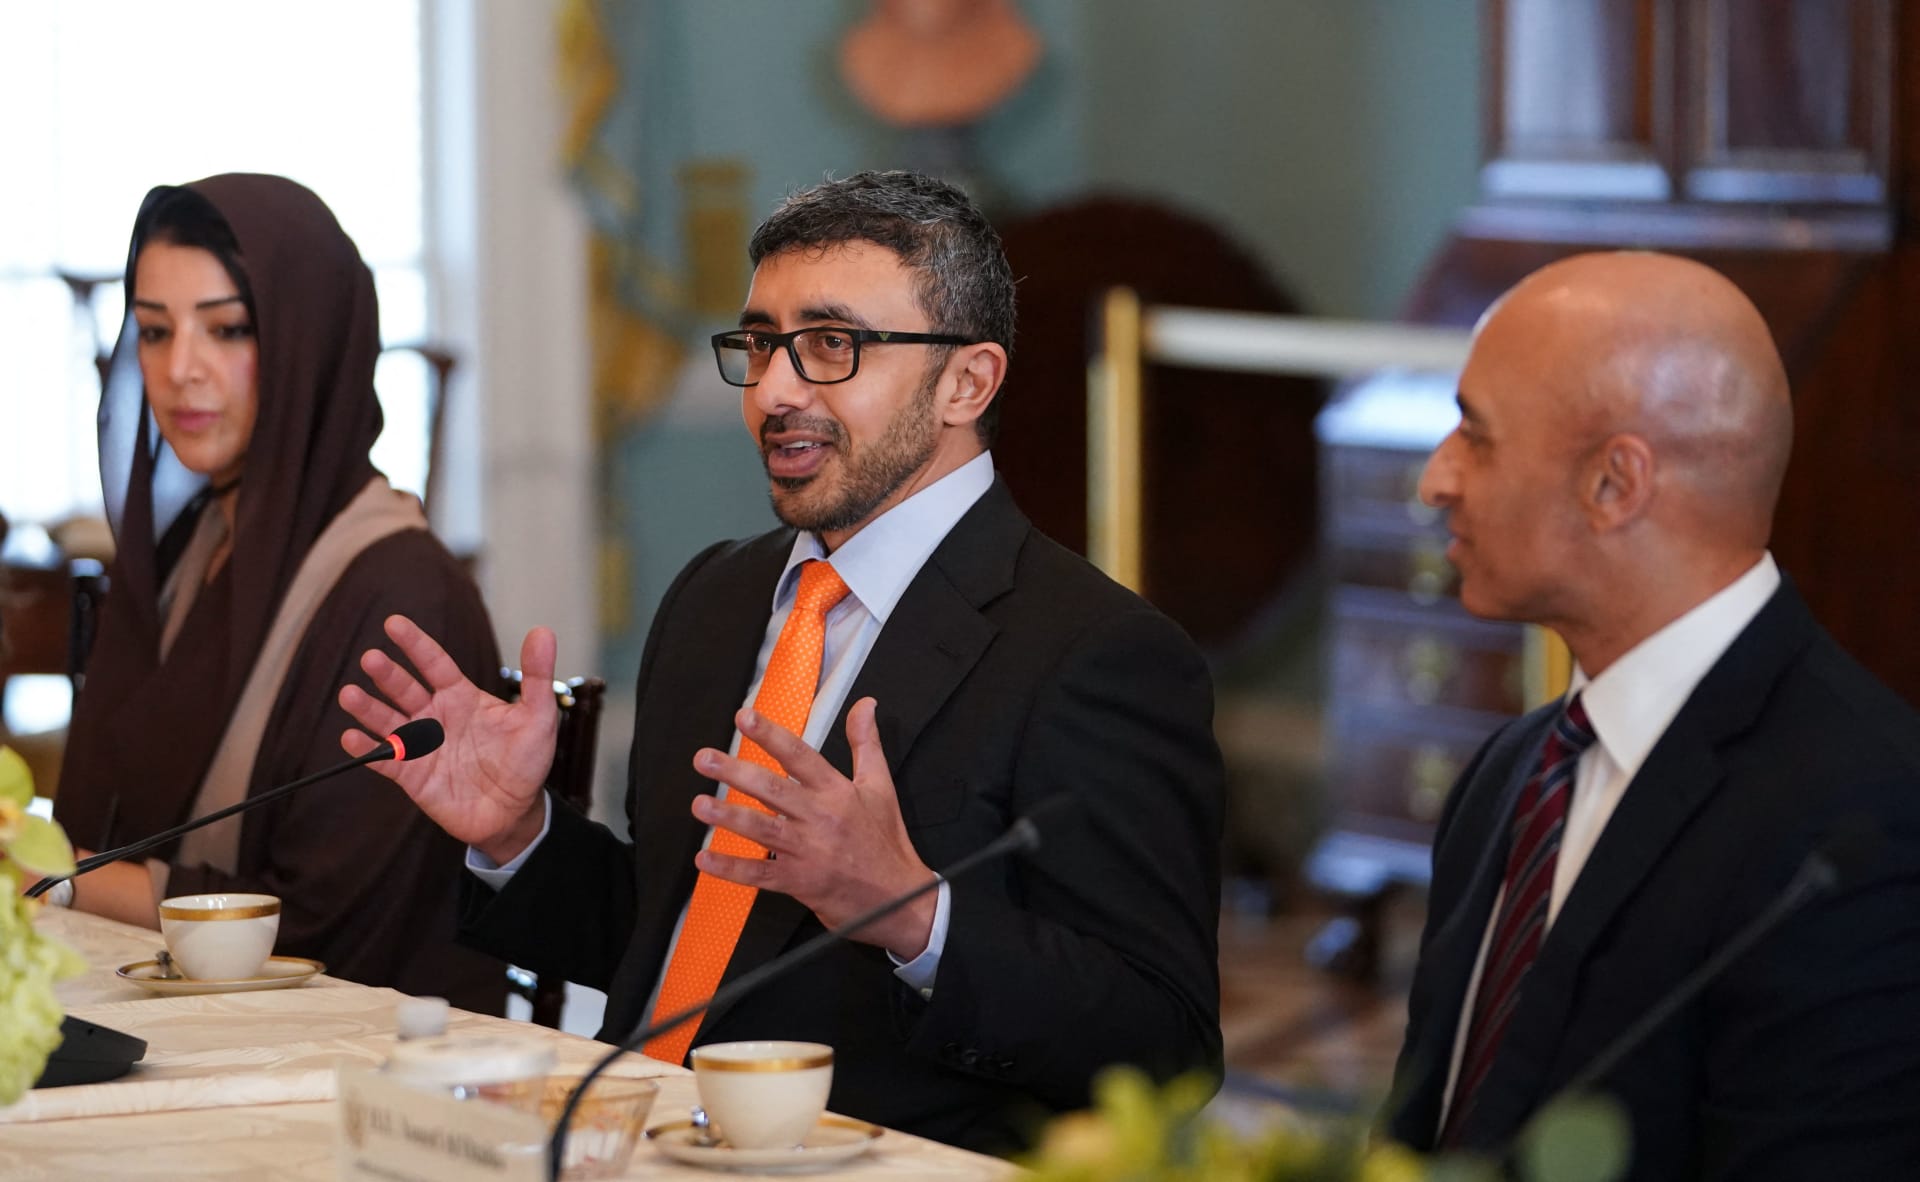 وزير خارجية الإمارات يتفاعل مع وصف ساويرس لمحمد بن زايد بـ"حكيم العرب"